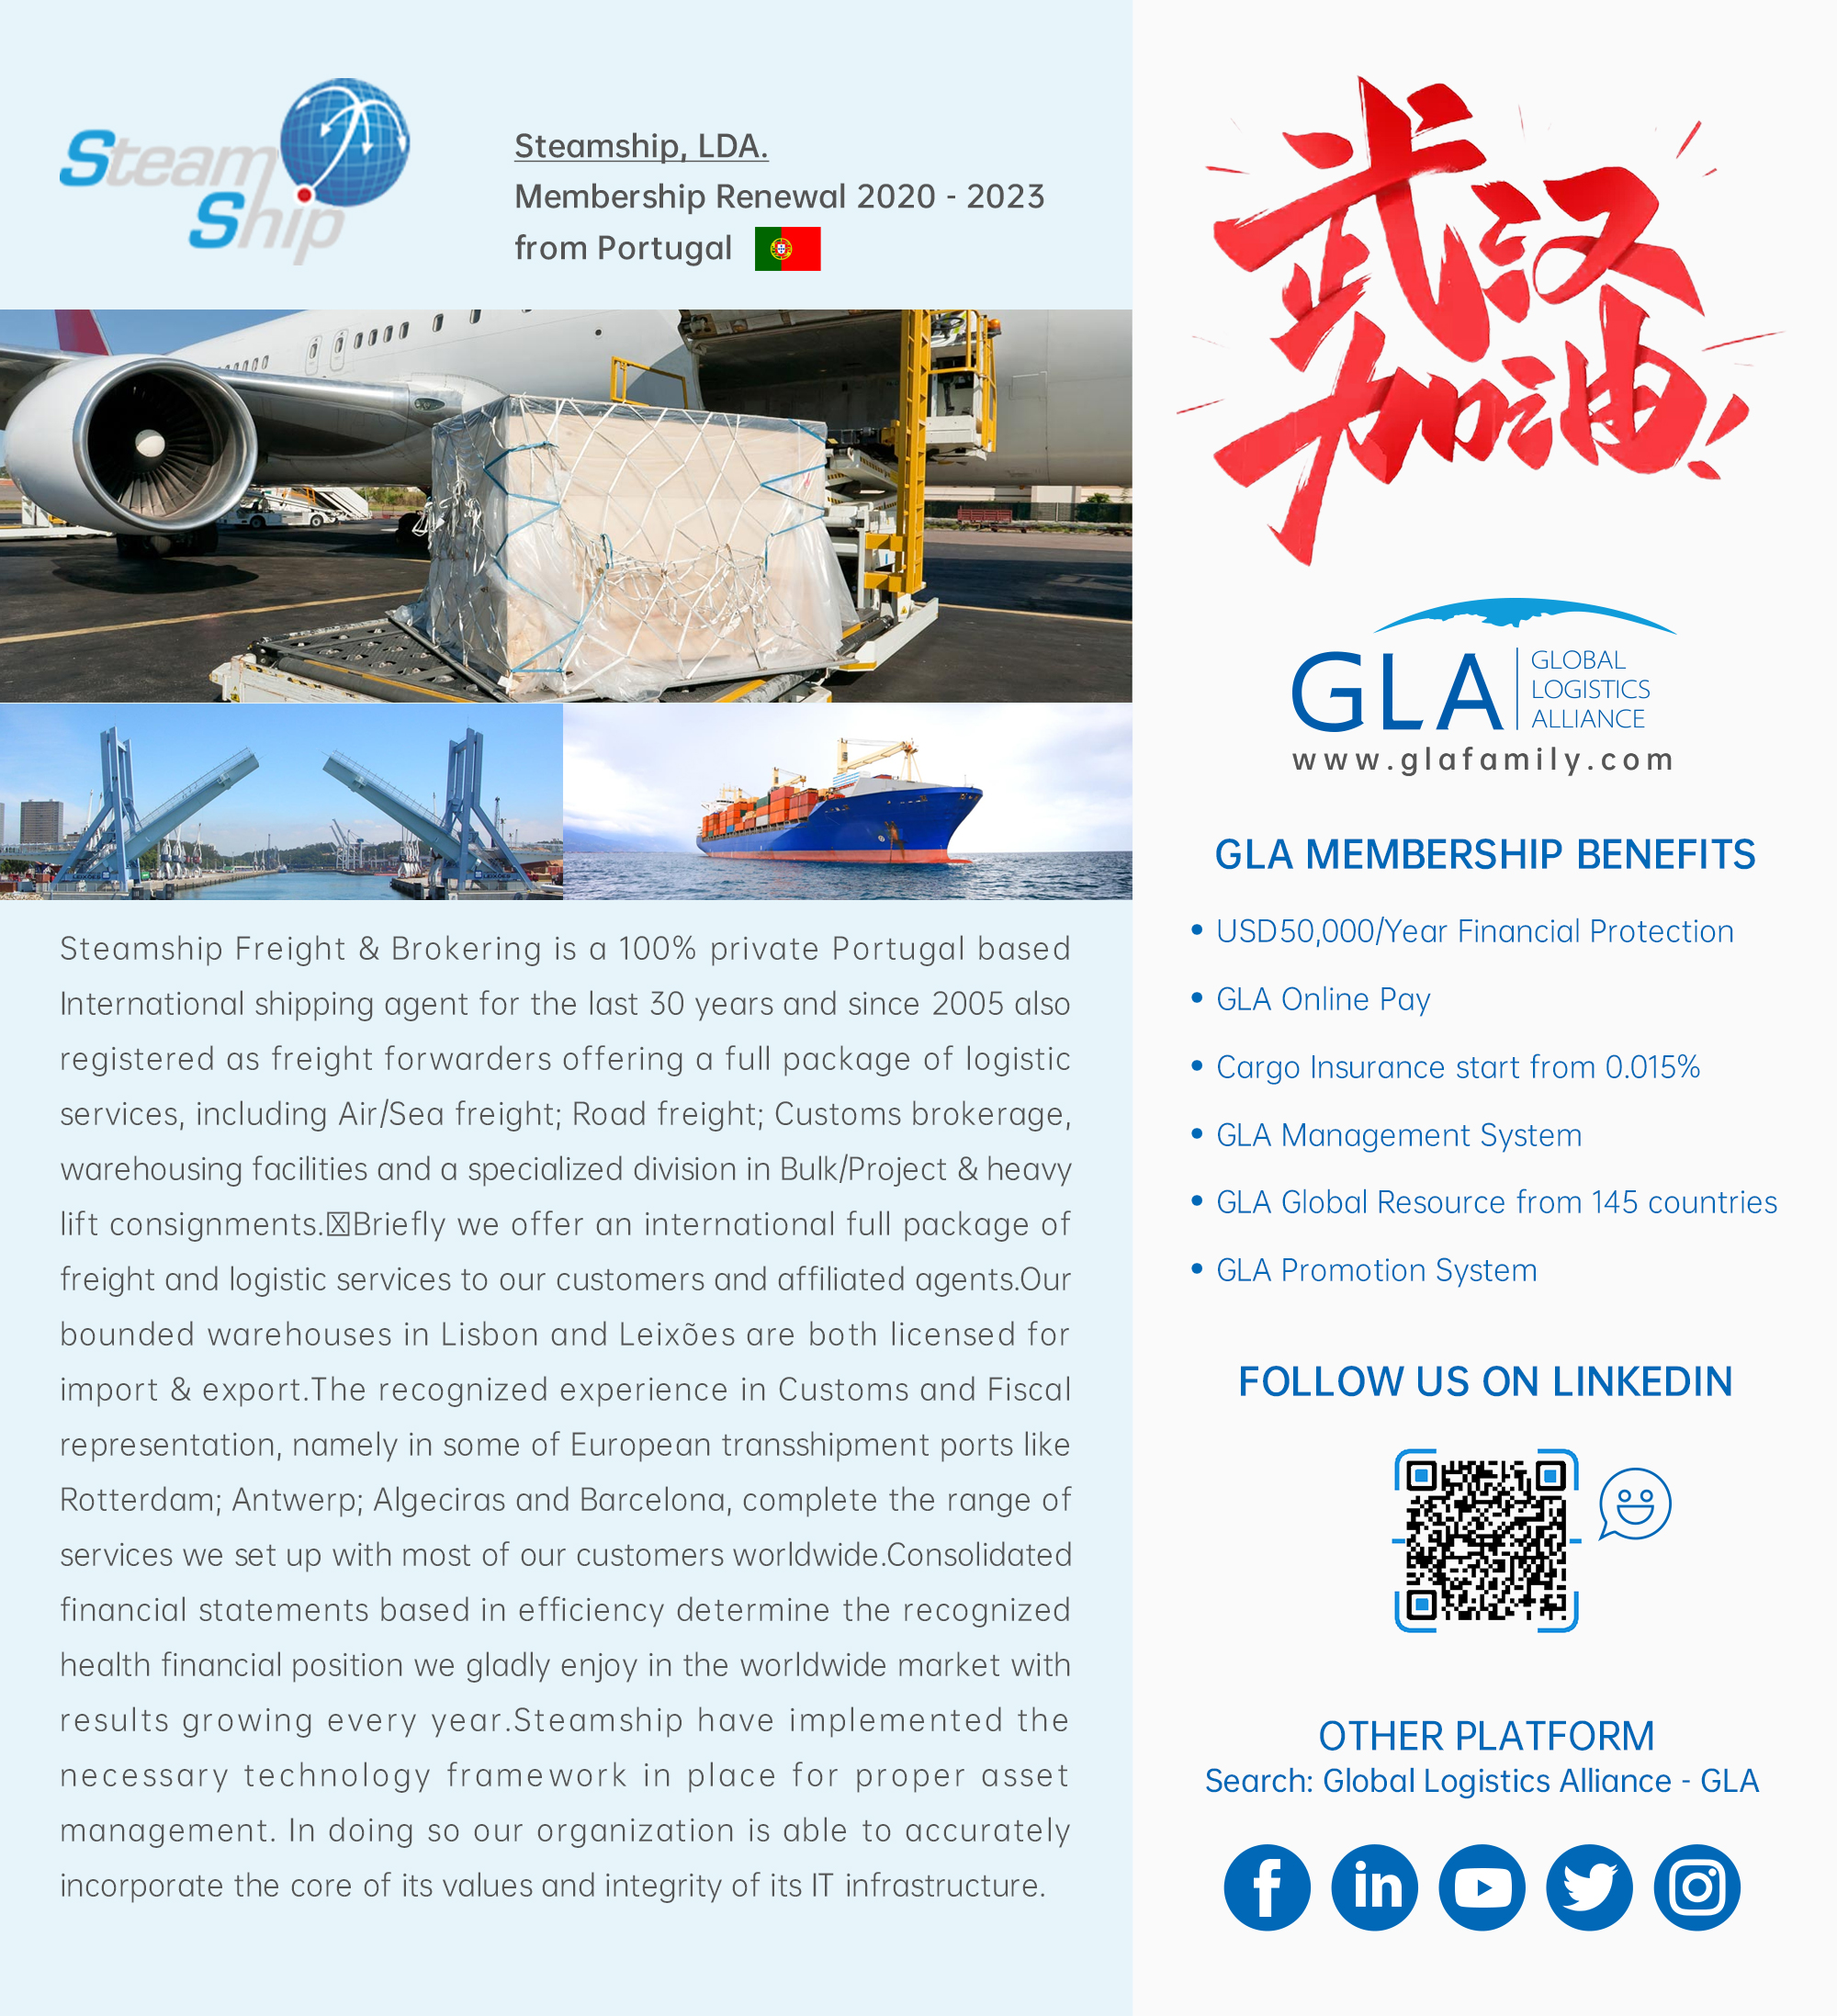 GLA Membership Renewal | Steamship, LDA.